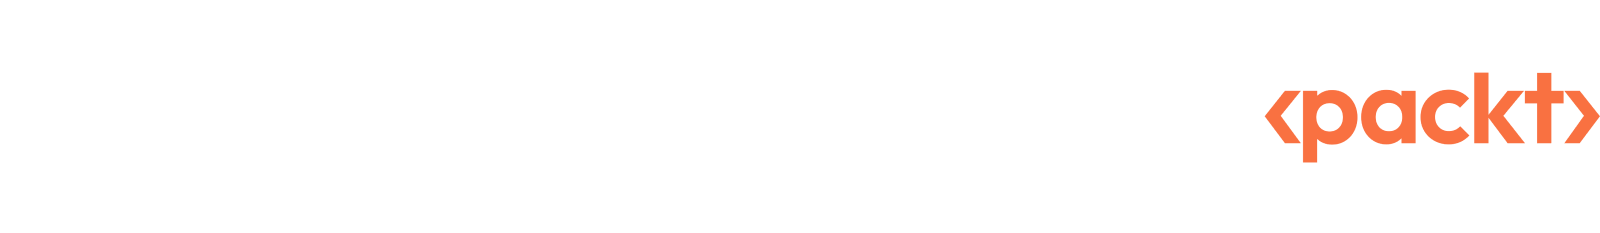 Humble Tech Book Bundle: Unity 3D Game Development Super Bundle by Packt